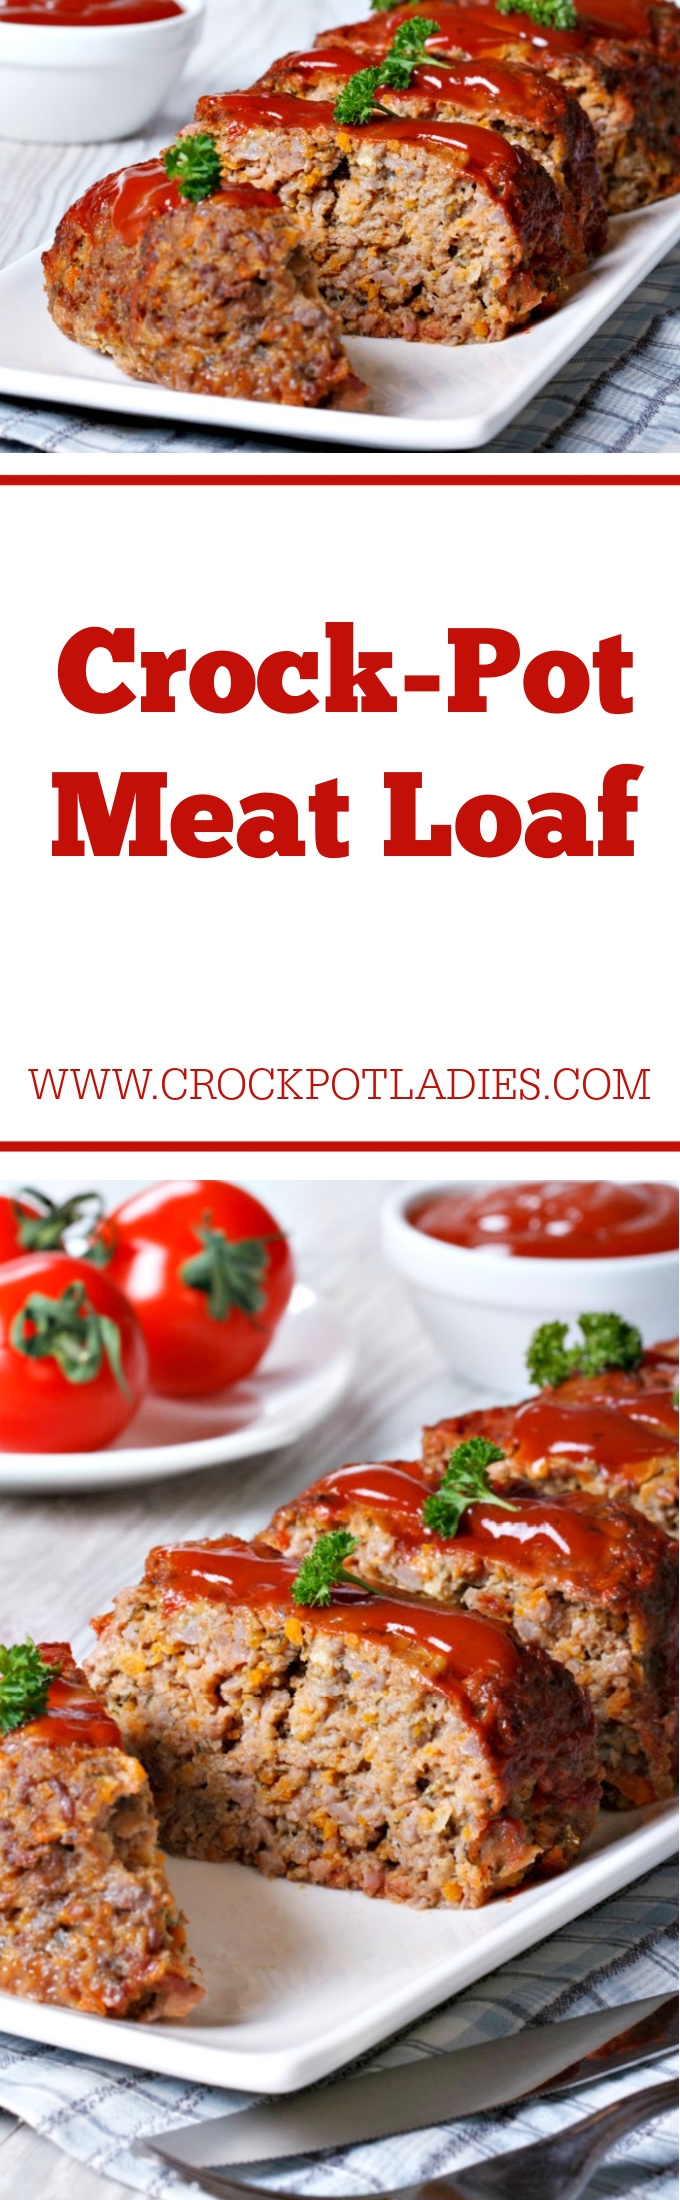 Crock-Pot Meat Loaf